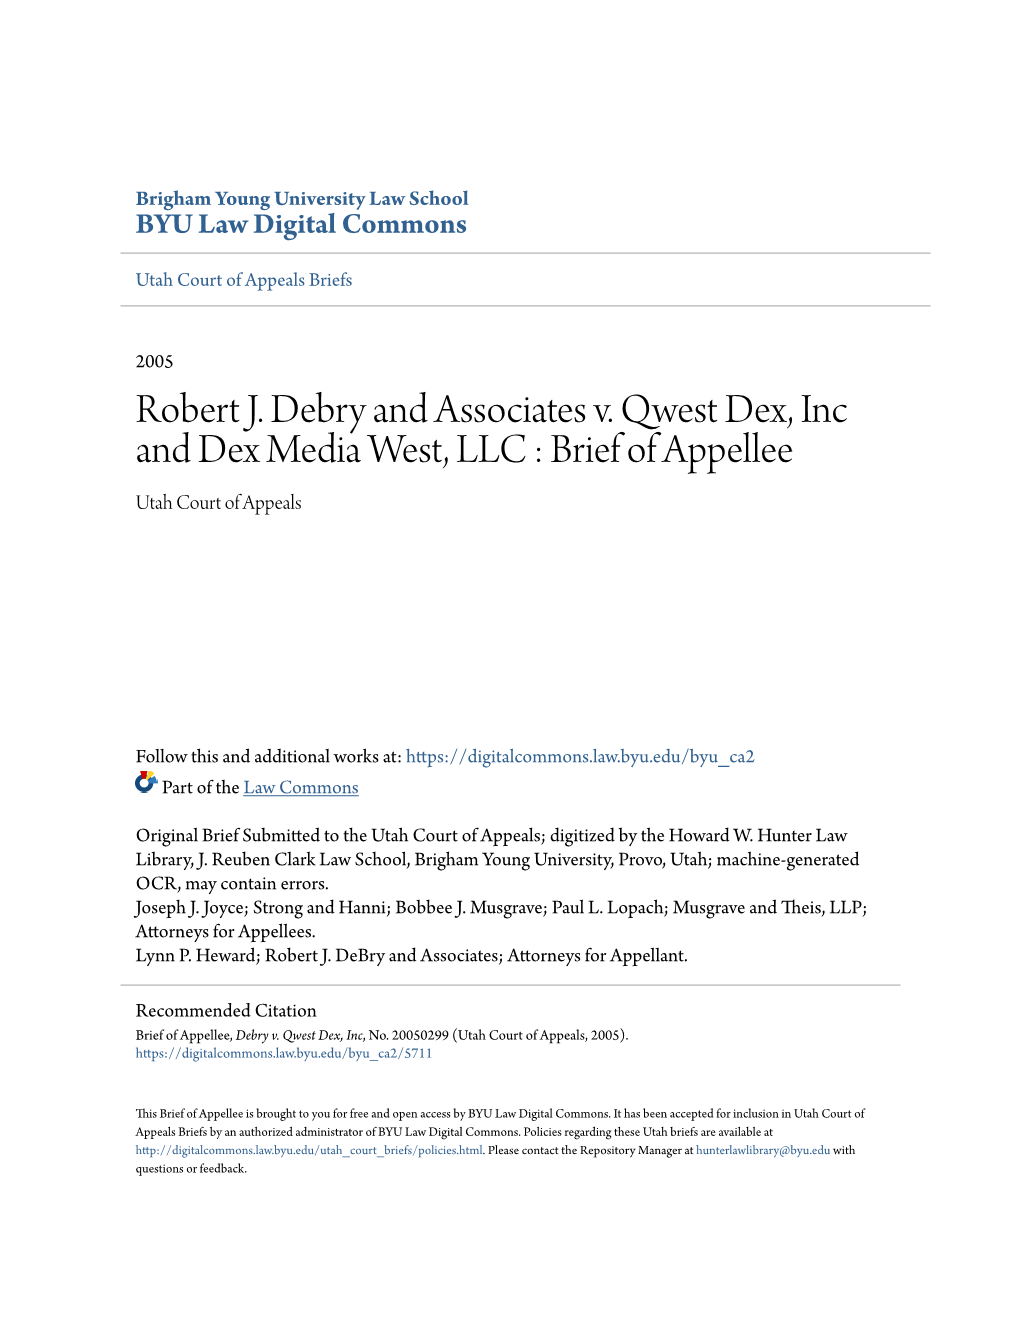 Robert J. Debry and Associates V. Qwest Dex, Inc and Dex Media West, LLC : Brief of Appellee Utah Court of Appeals